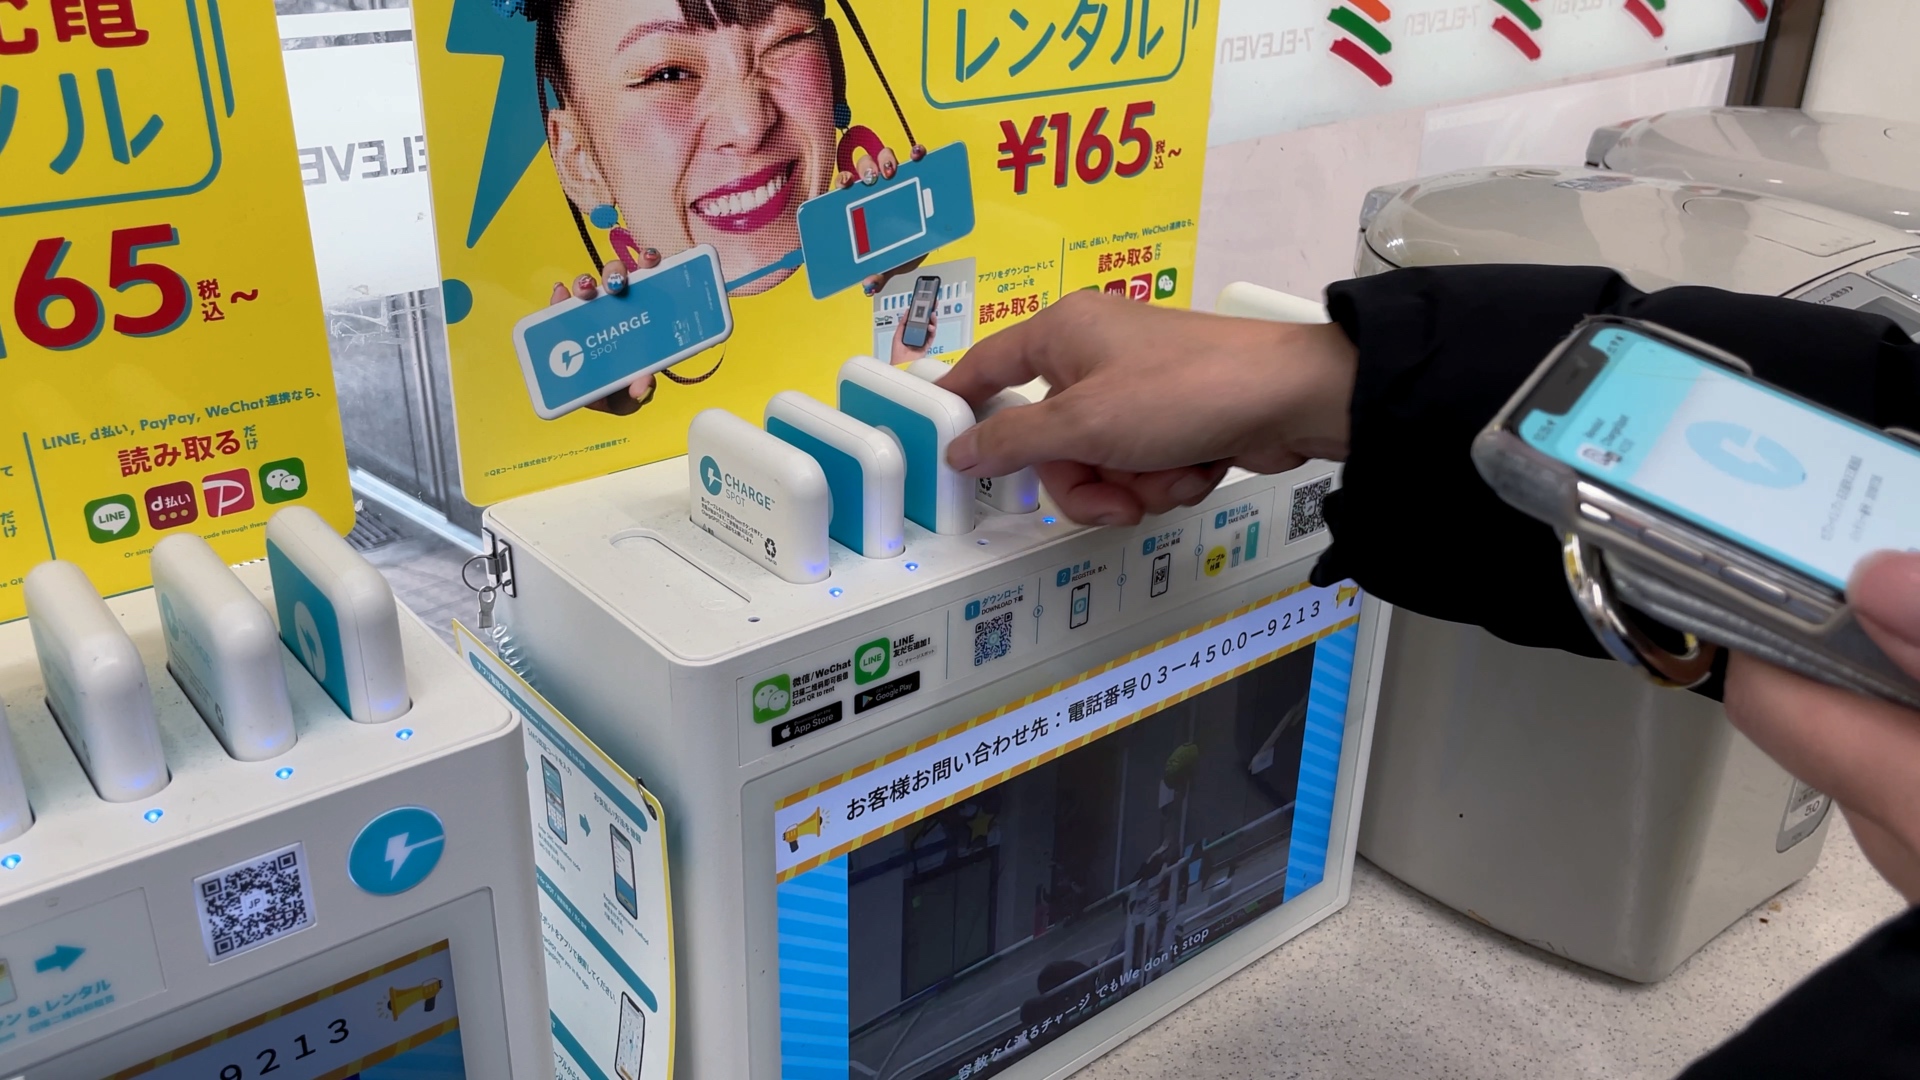 Eine ChargeSpot-Verleihstation in einem Minimarkt von 7-Eleven in Japan.